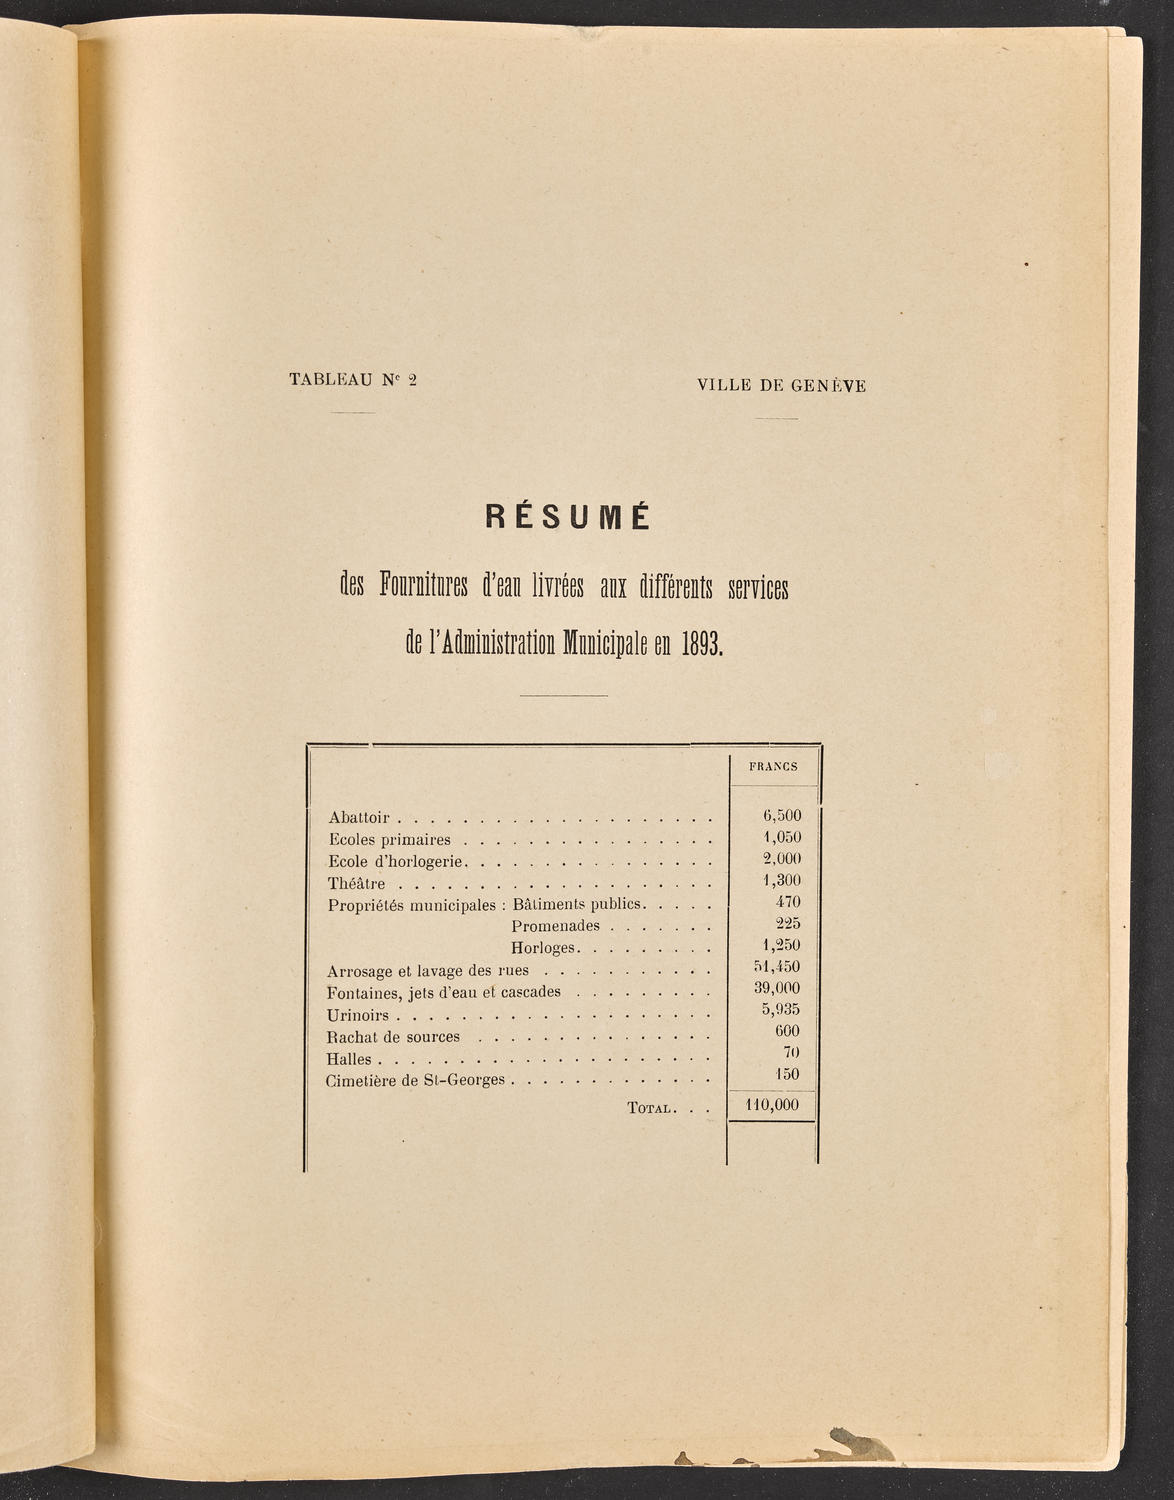 Projet de budget de la Ville de Genève pour 1893, page 3 of 10